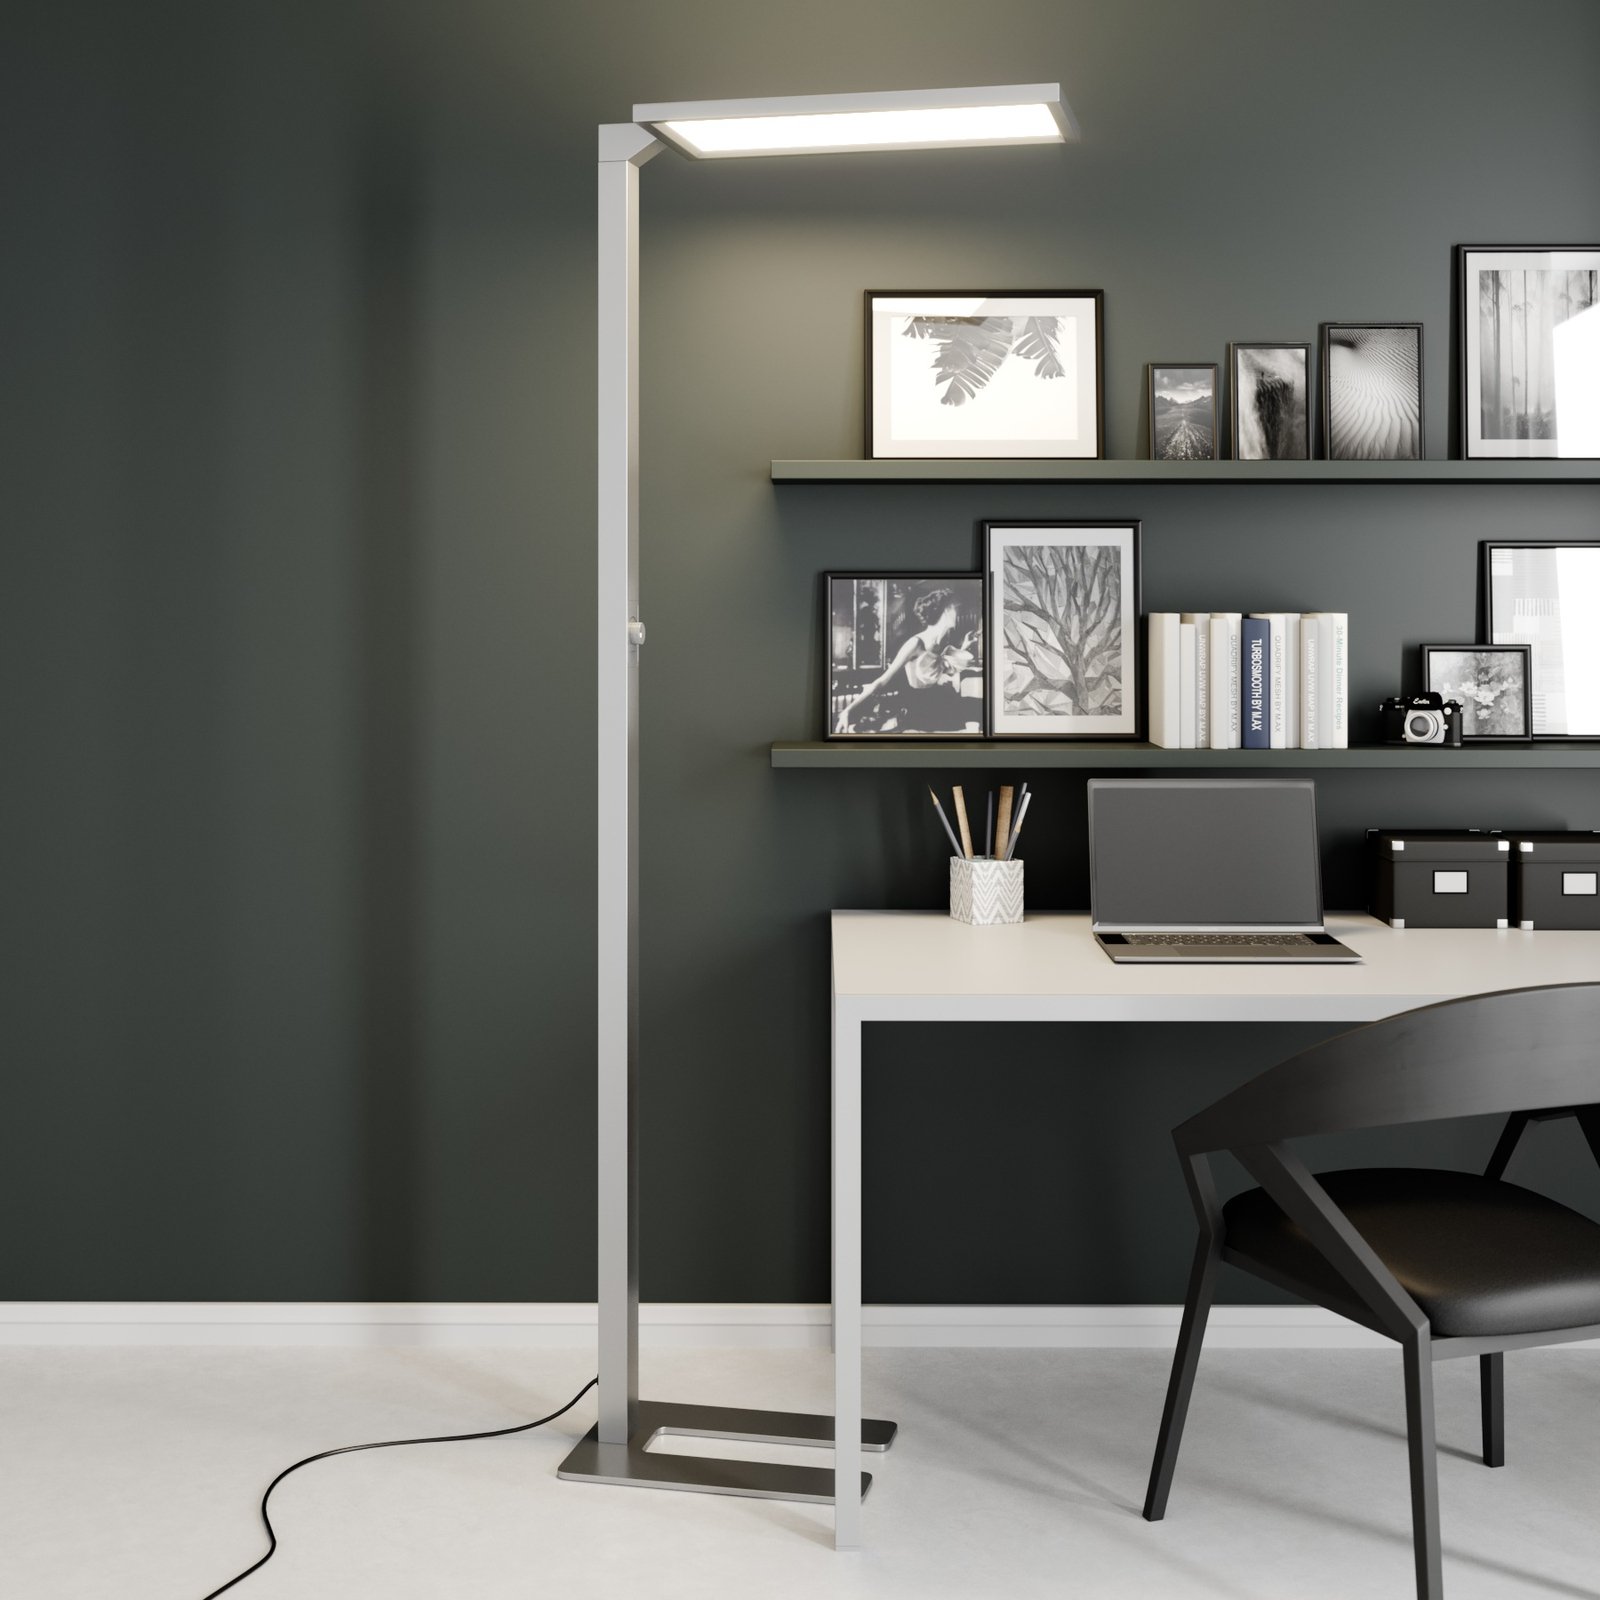 Prios Lexo LED kantoor vloerlamp met dimmer